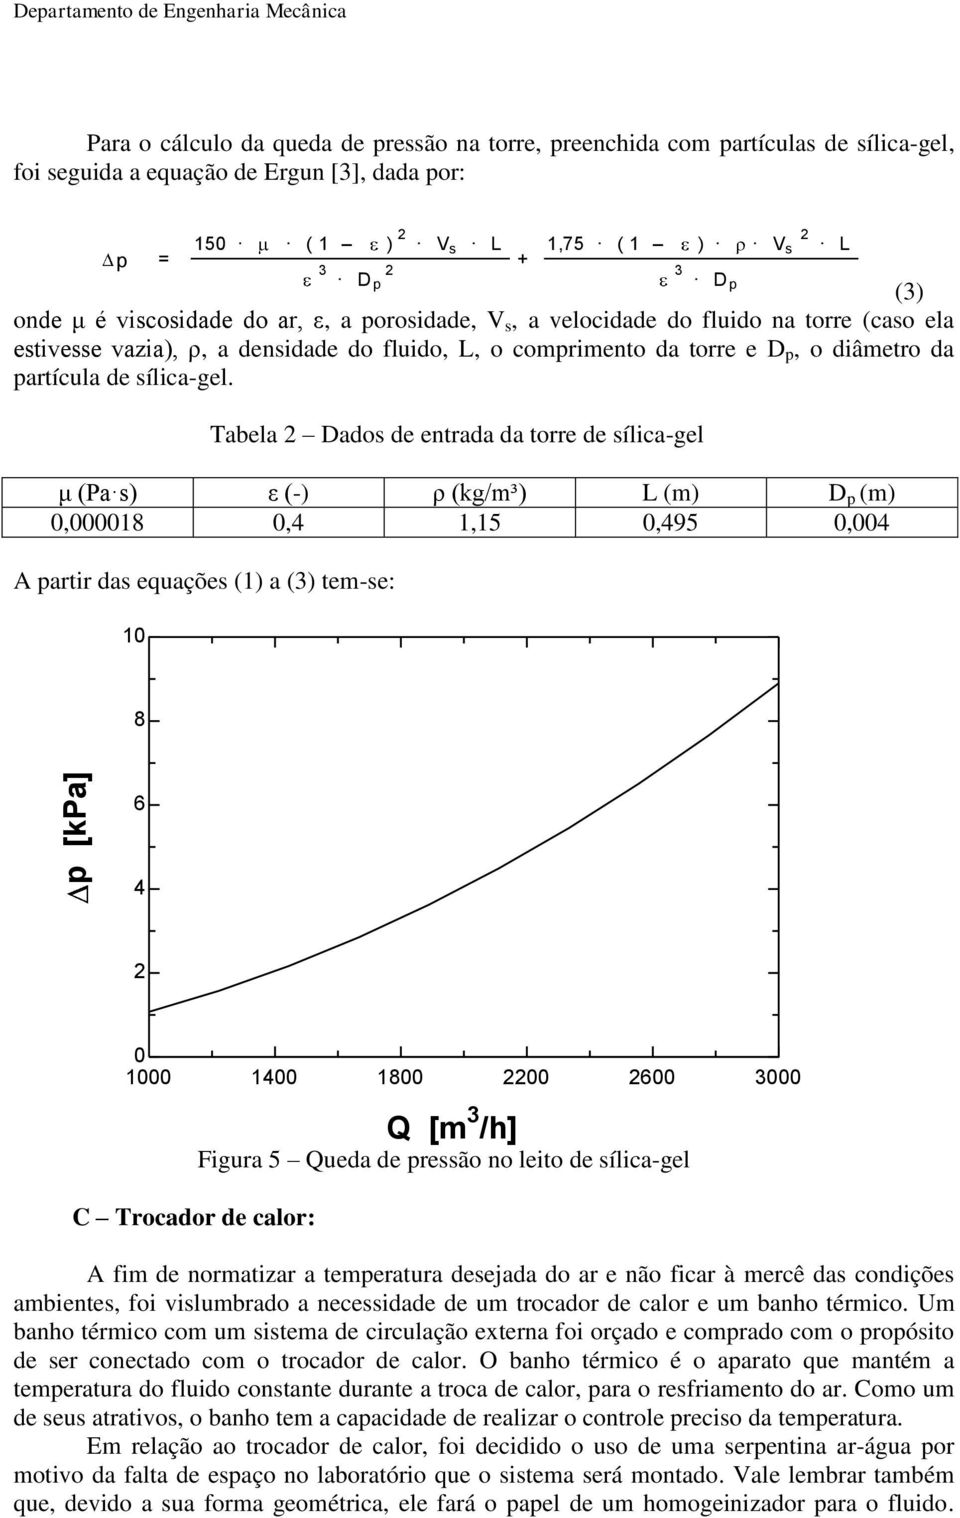 Tabela Dados de entrada da torre de sílica-gel μ (Pa s) ε (-) ρ (kg/m³) L (m) D p (m) 0,000018 0,4 1,15 0,495 0,004 A partir das equações (1) a (3) tem-se: 10 150 ( 1 ) V s L 3 Dp + 1,75 ( 1 ) V s L